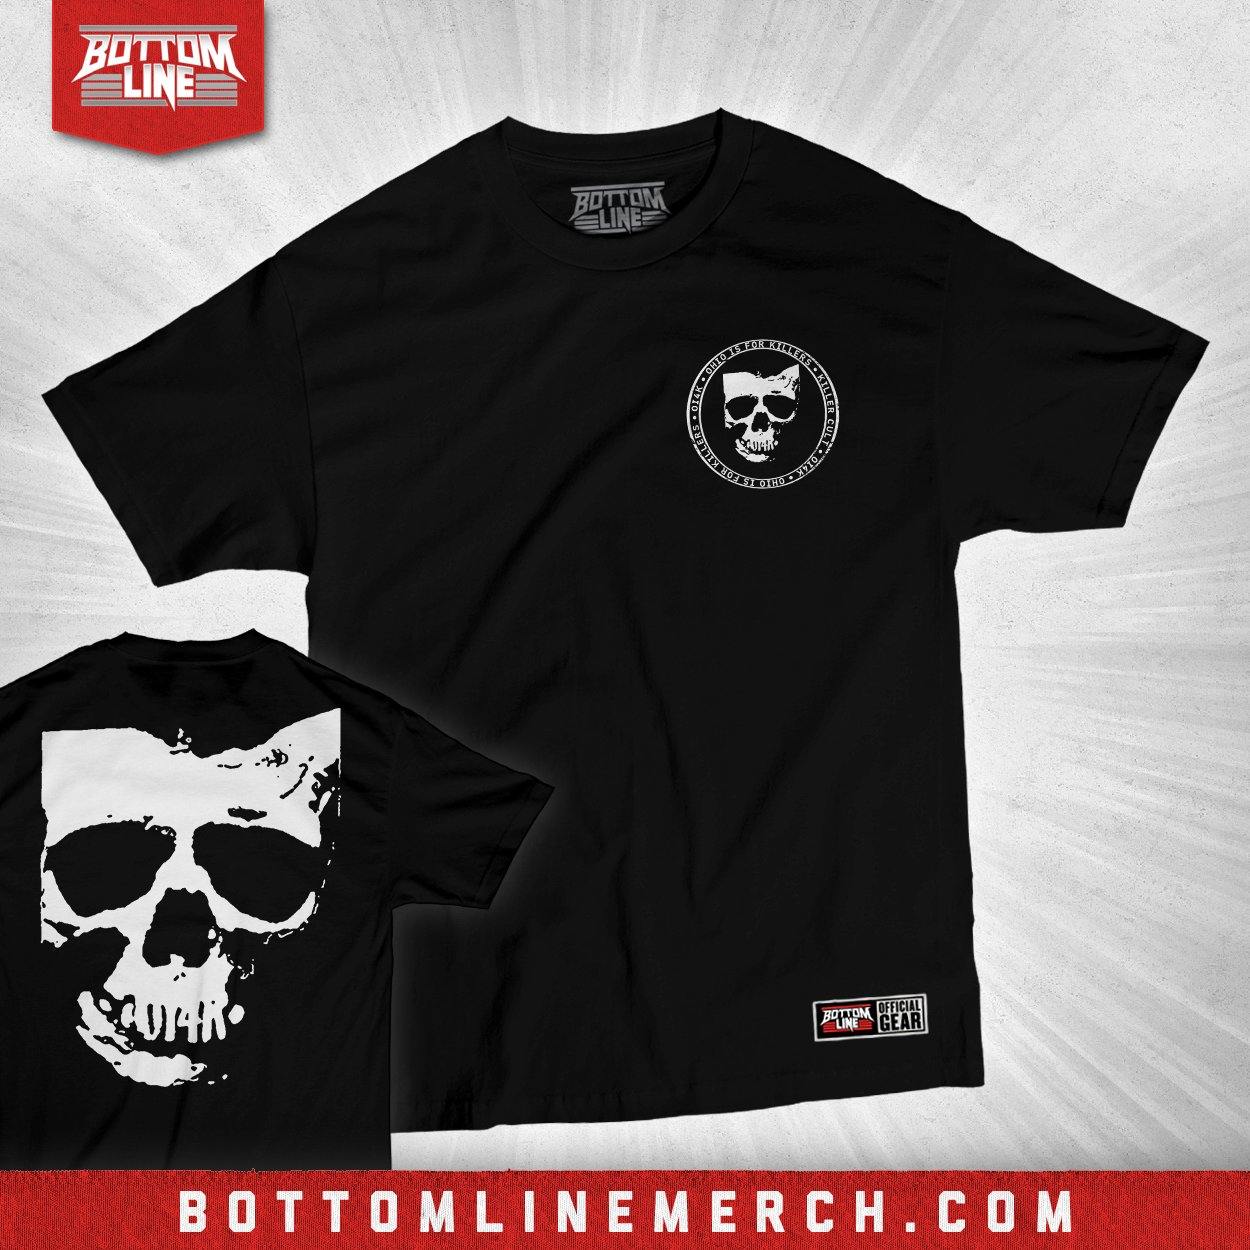 Buy Now – OI4K "Frame" Shirt – Wrestler & Wrestling Merch – Bottom Line